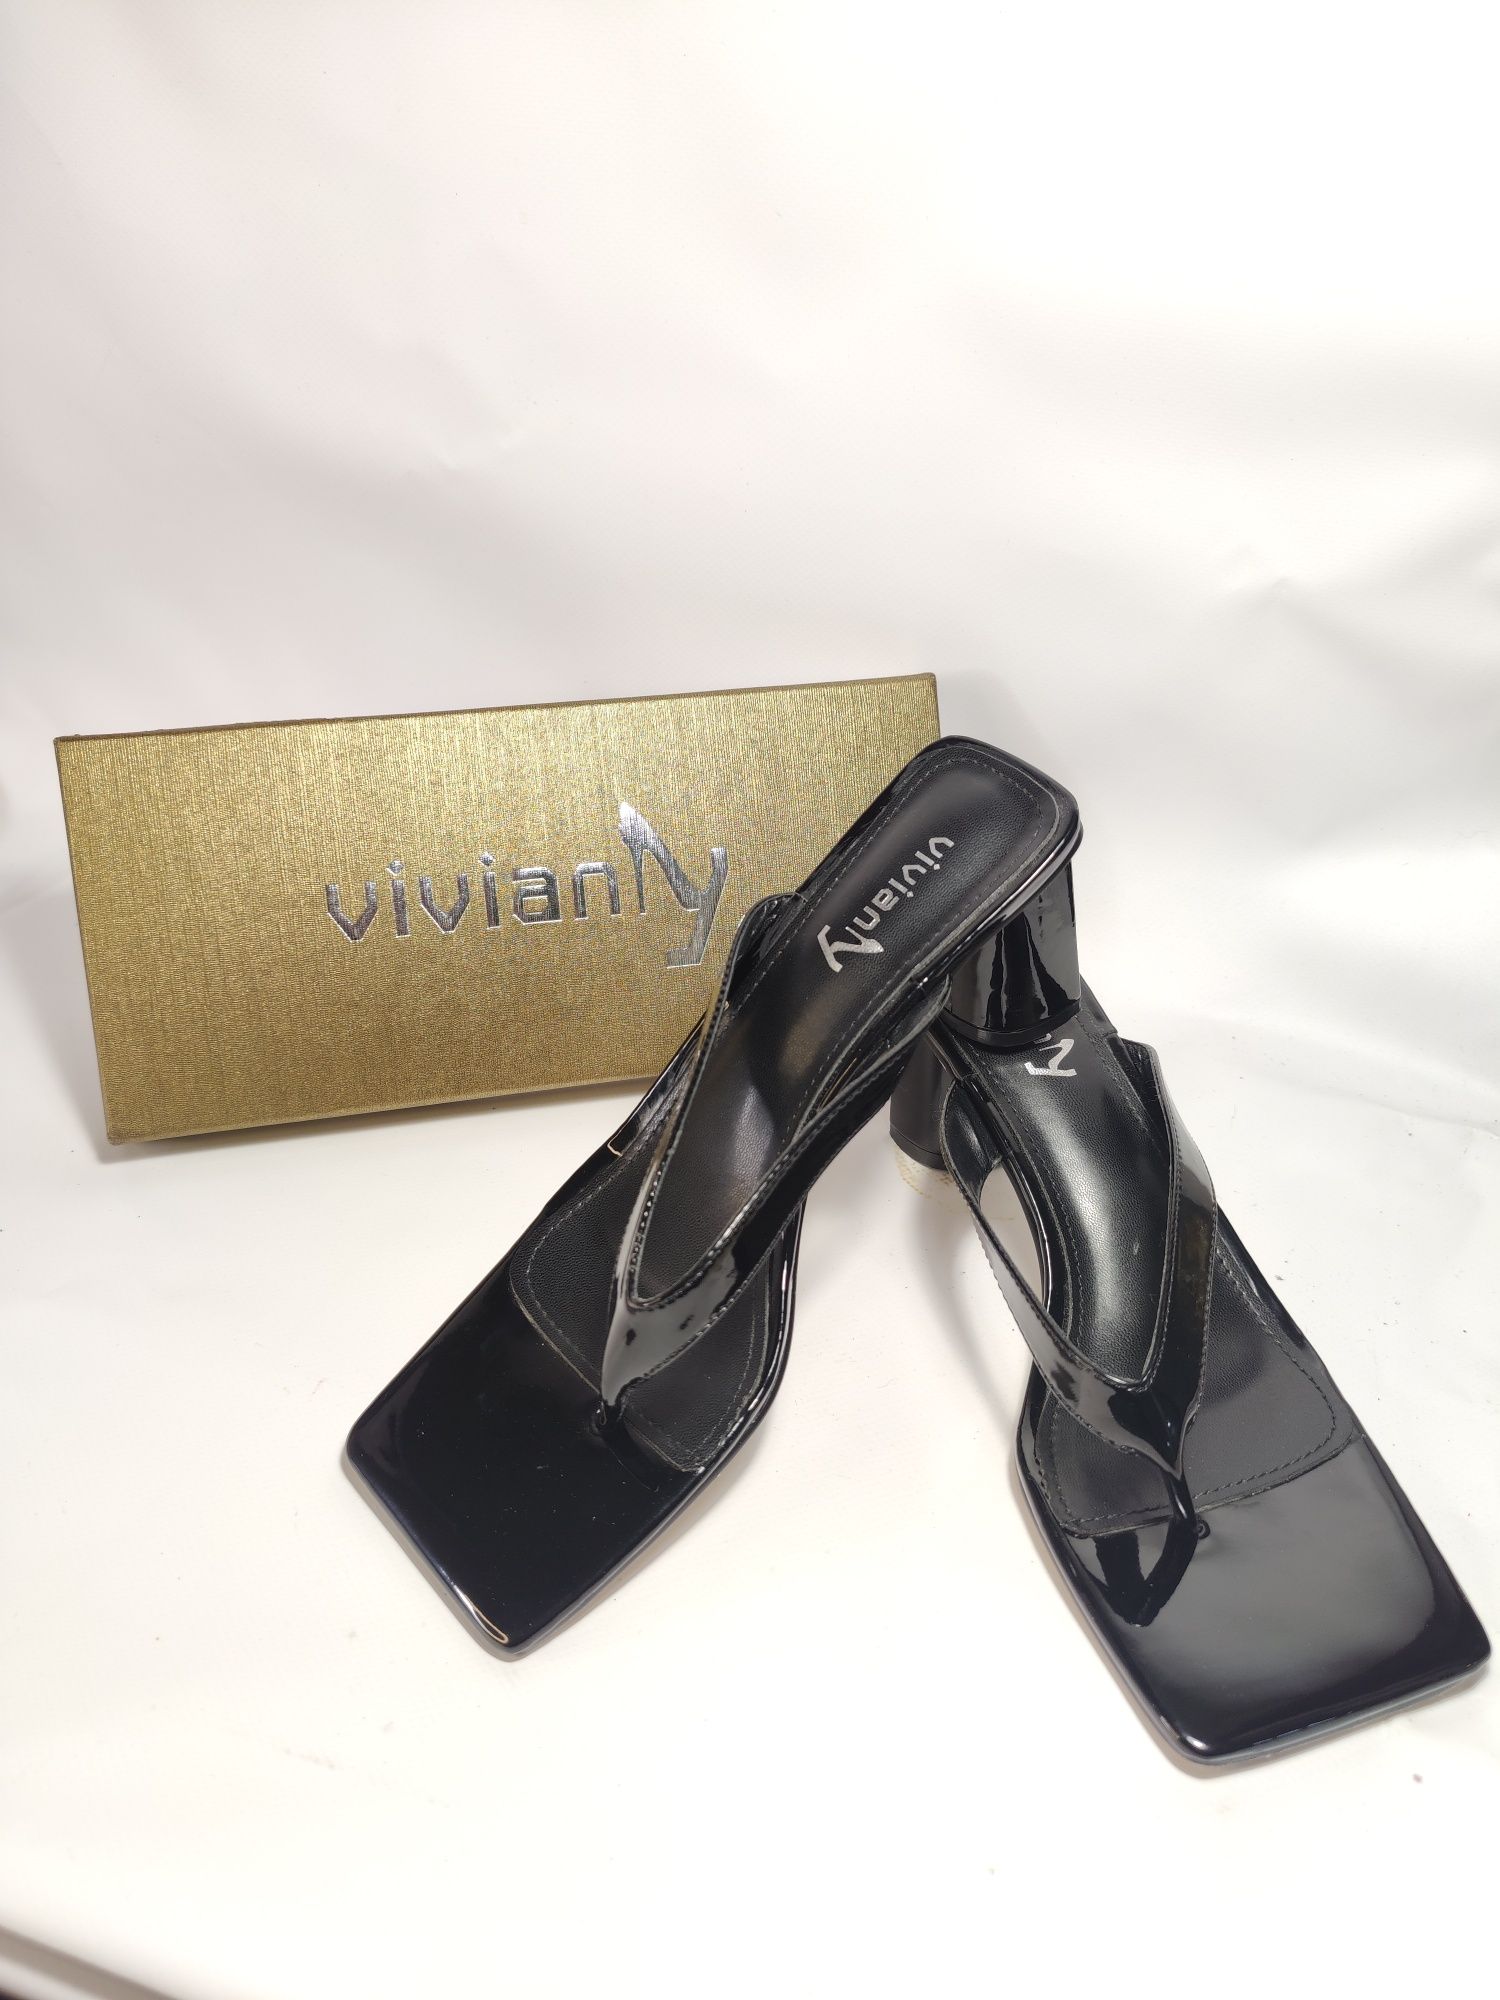 Черные босоножки на каблуке Vivianly с квадратным носком без шнуровки